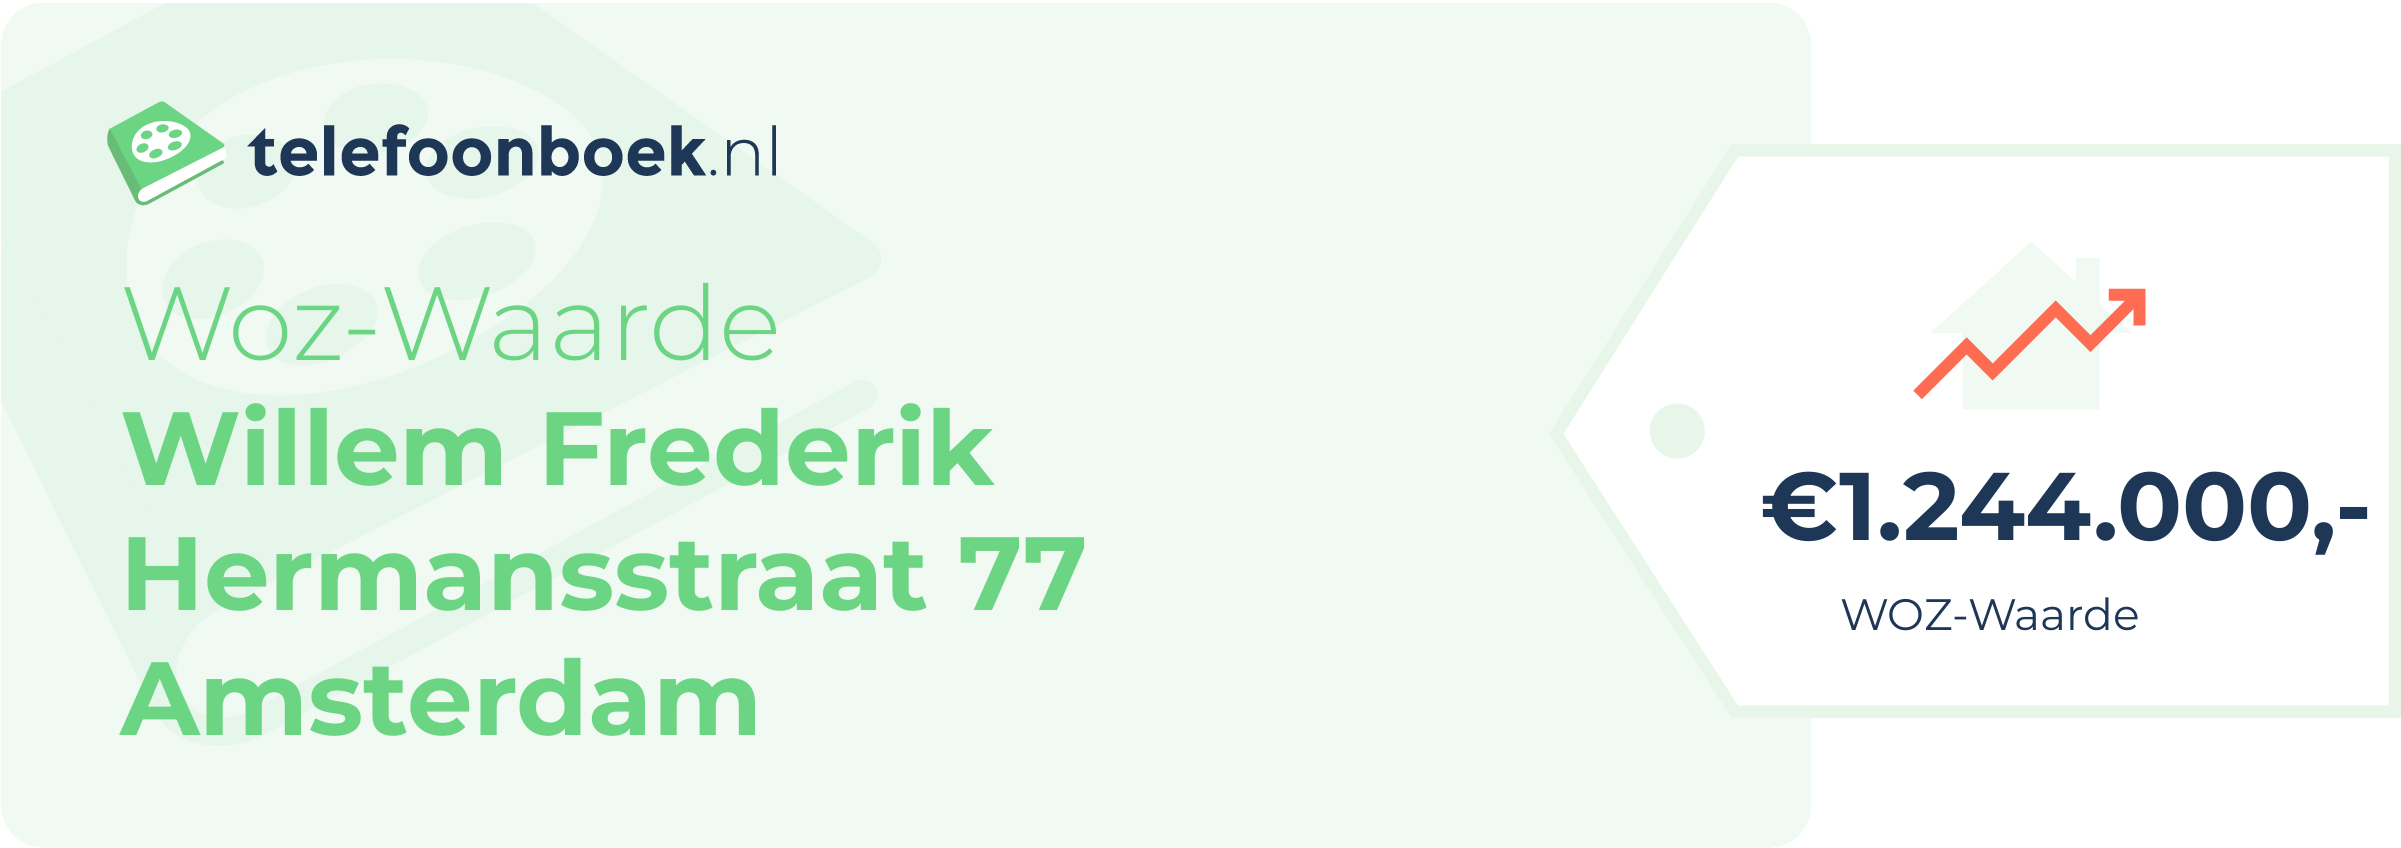 WOZ-waarde Willem Frederik Hermansstraat 77 Amsterdam